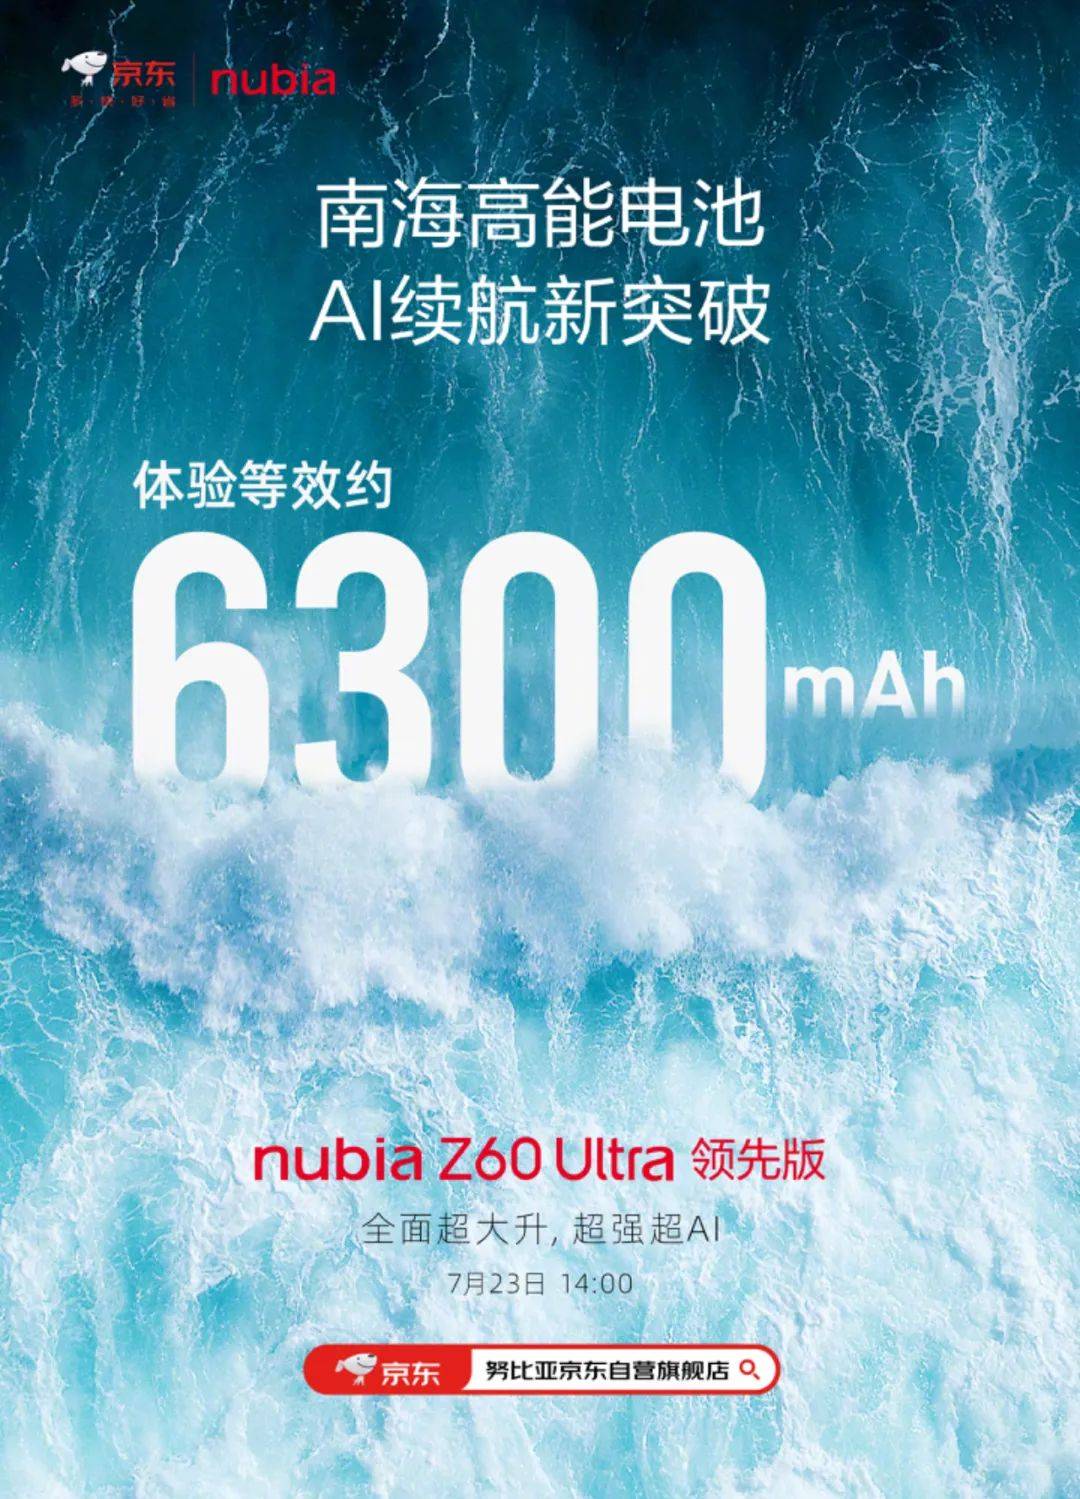 旗舰新品发布会,带来努比亚z60s pro,努比亚z60 ultra领先版两款新机